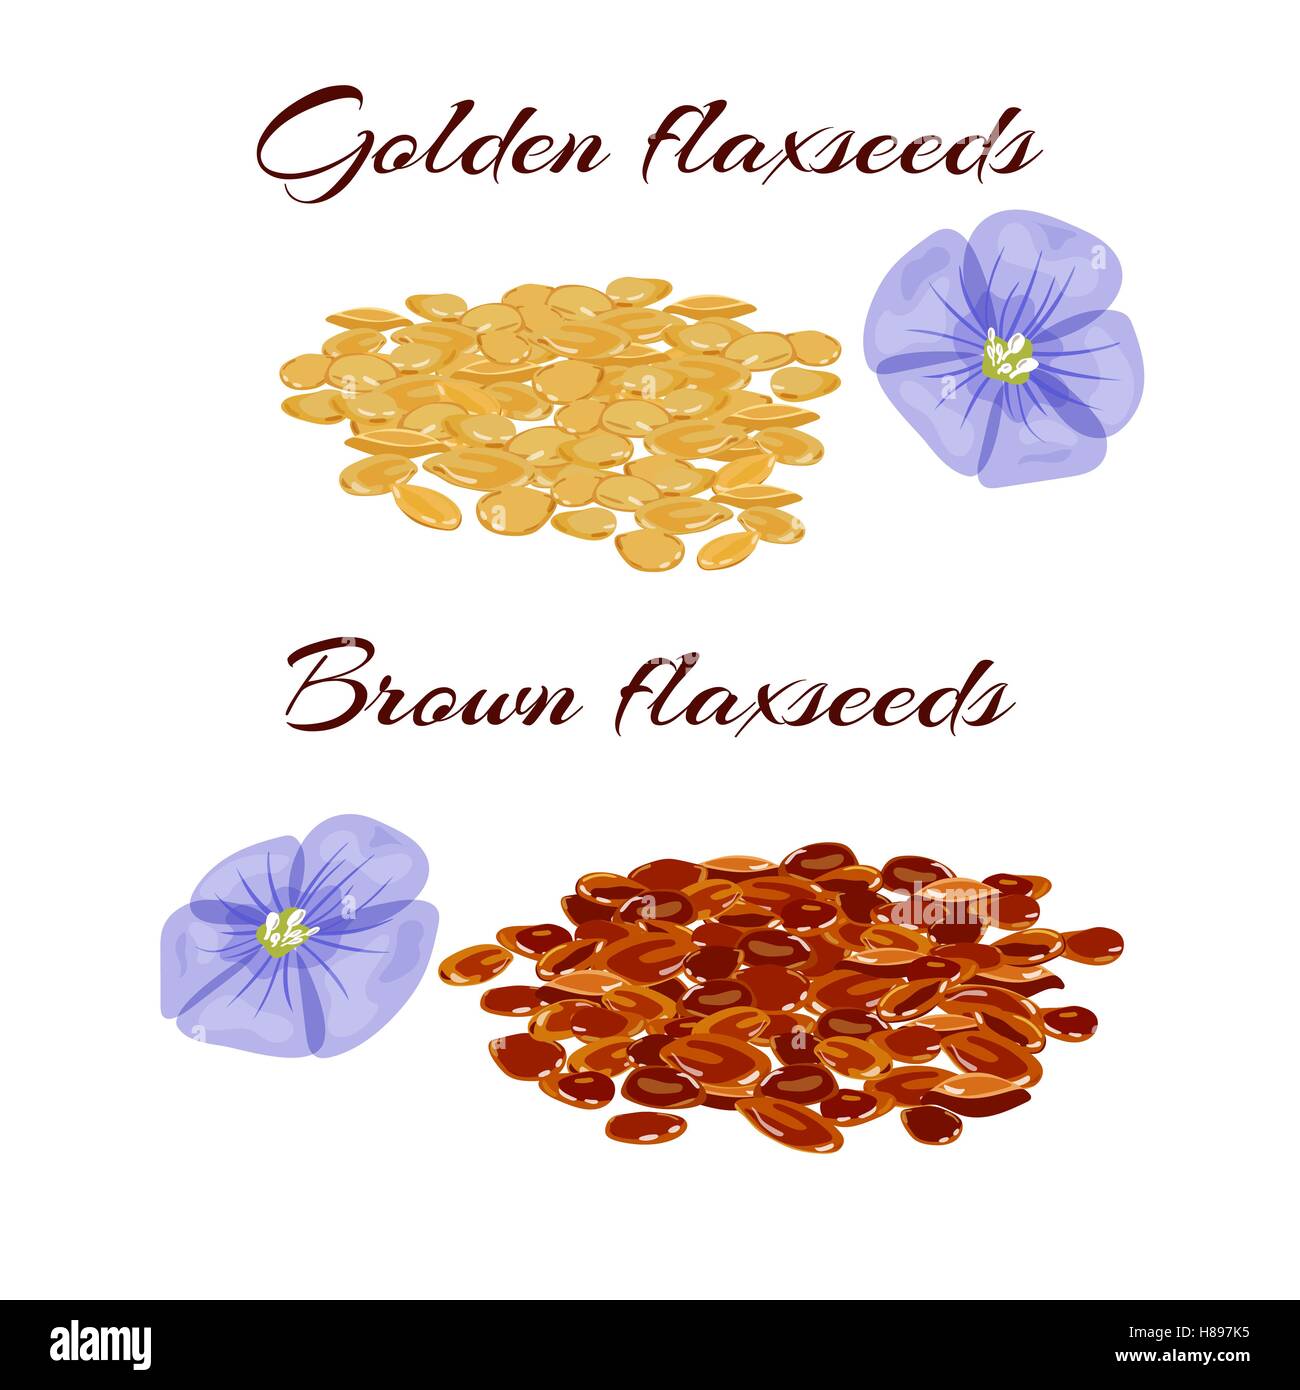 Les graines de lin brun et doré ou linseeds. Vue en gros plan. Vector illustration. Illustration de Vecteur